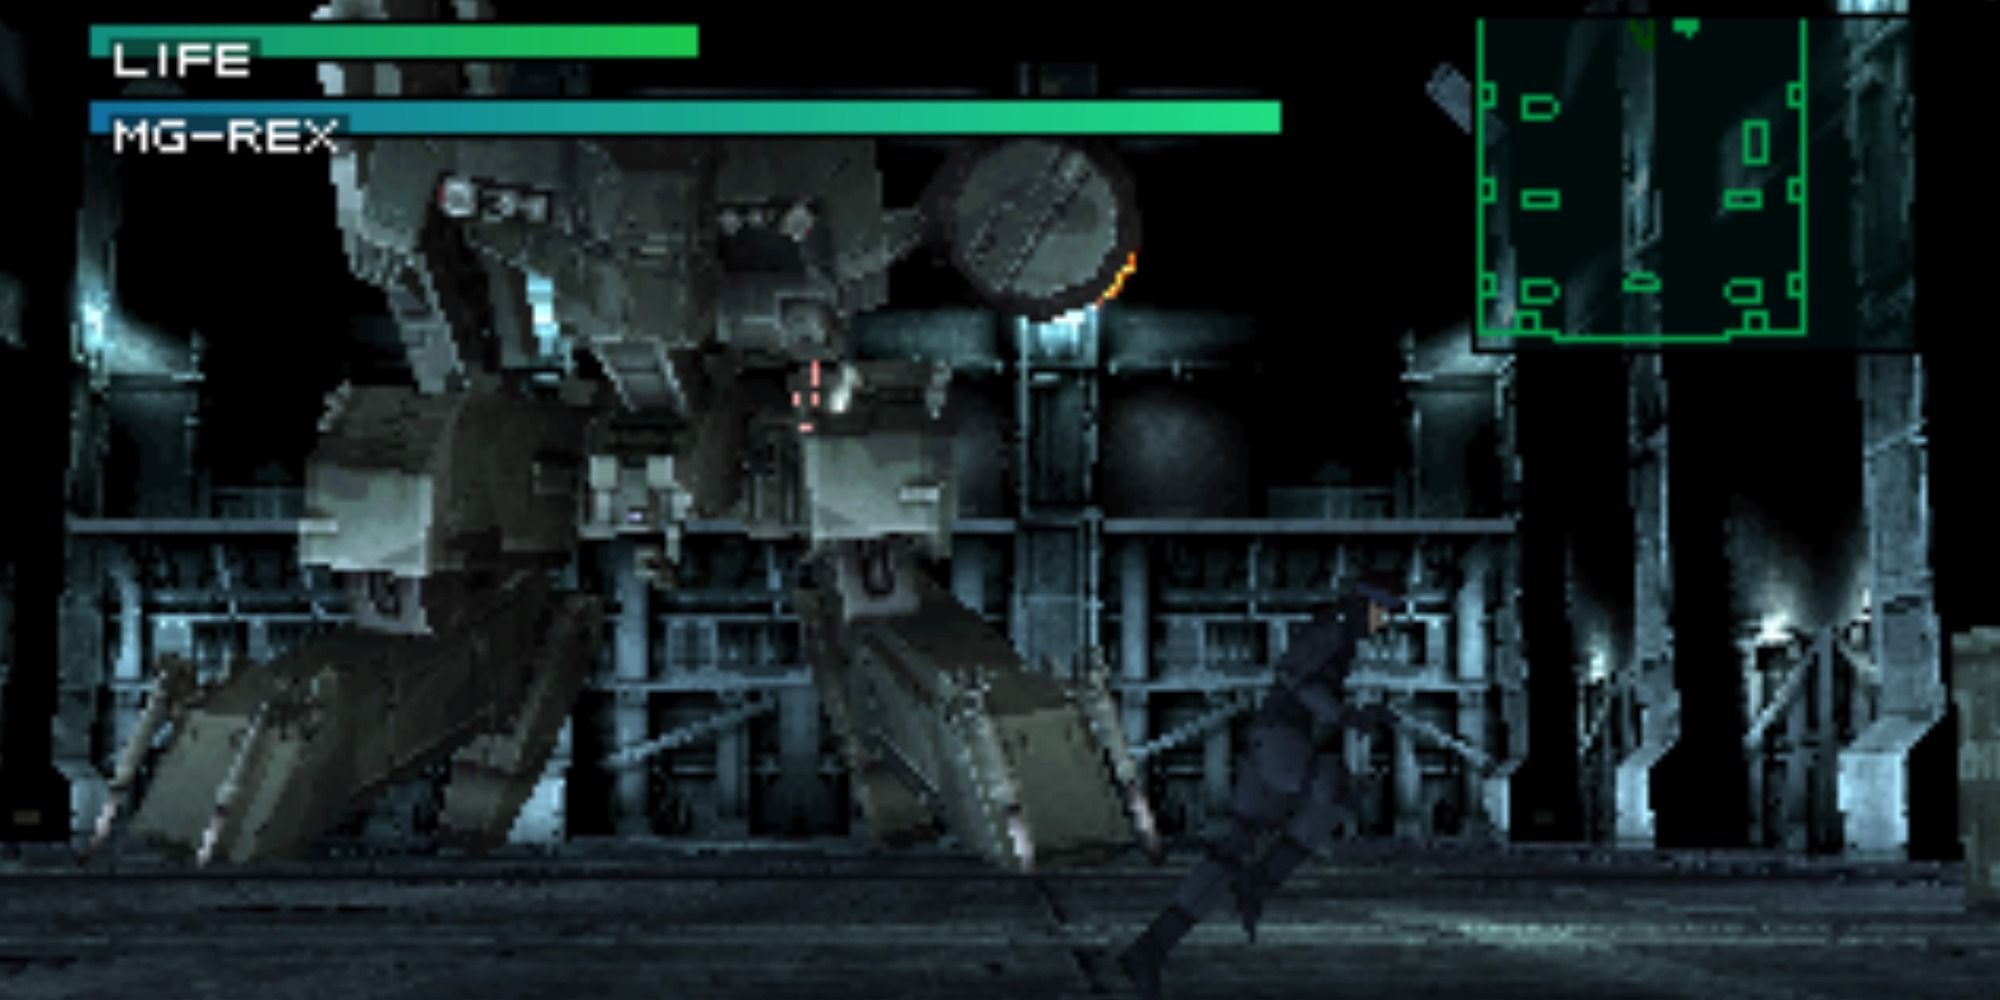 Snake running away from Metal Gear Rex